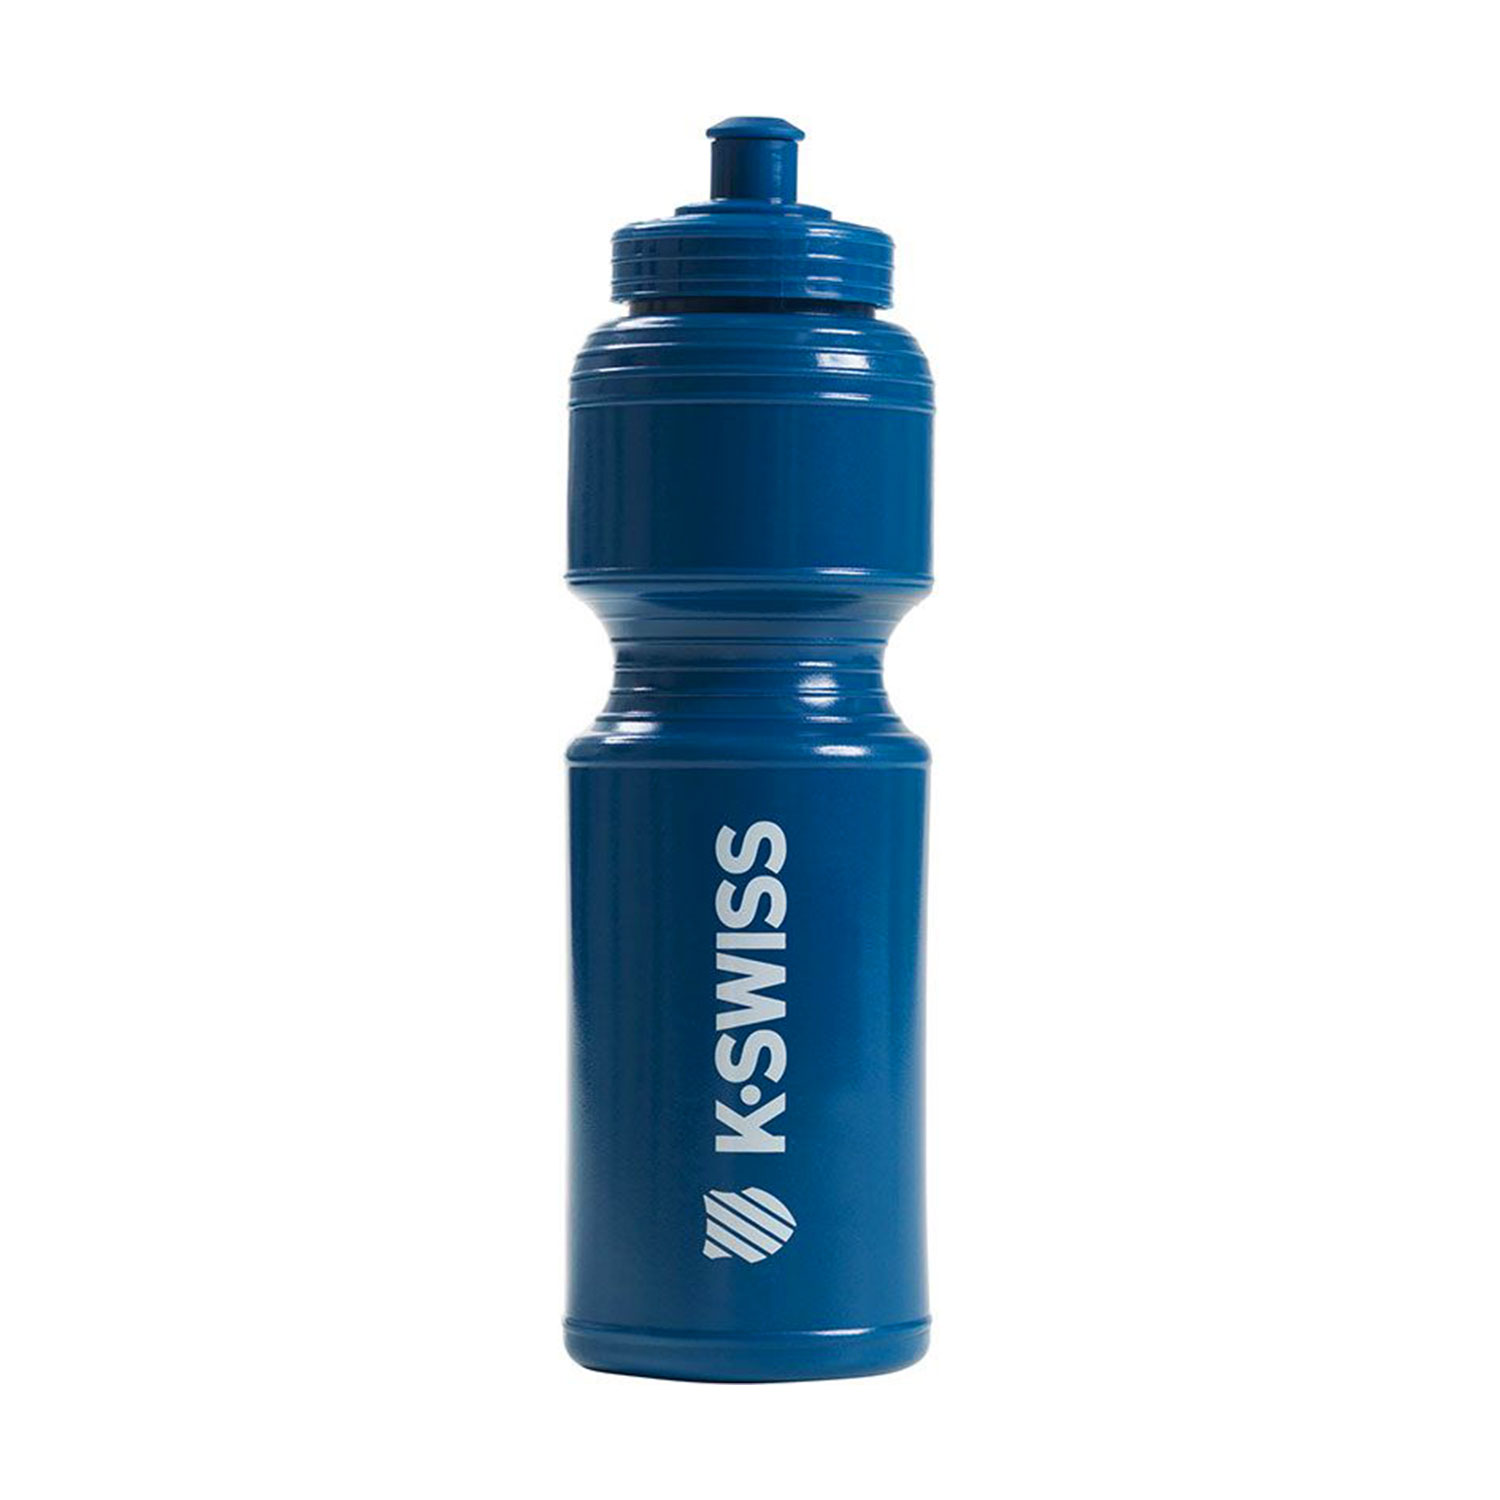 K-Swiss Court Water Bottle - Brunner Blue/White